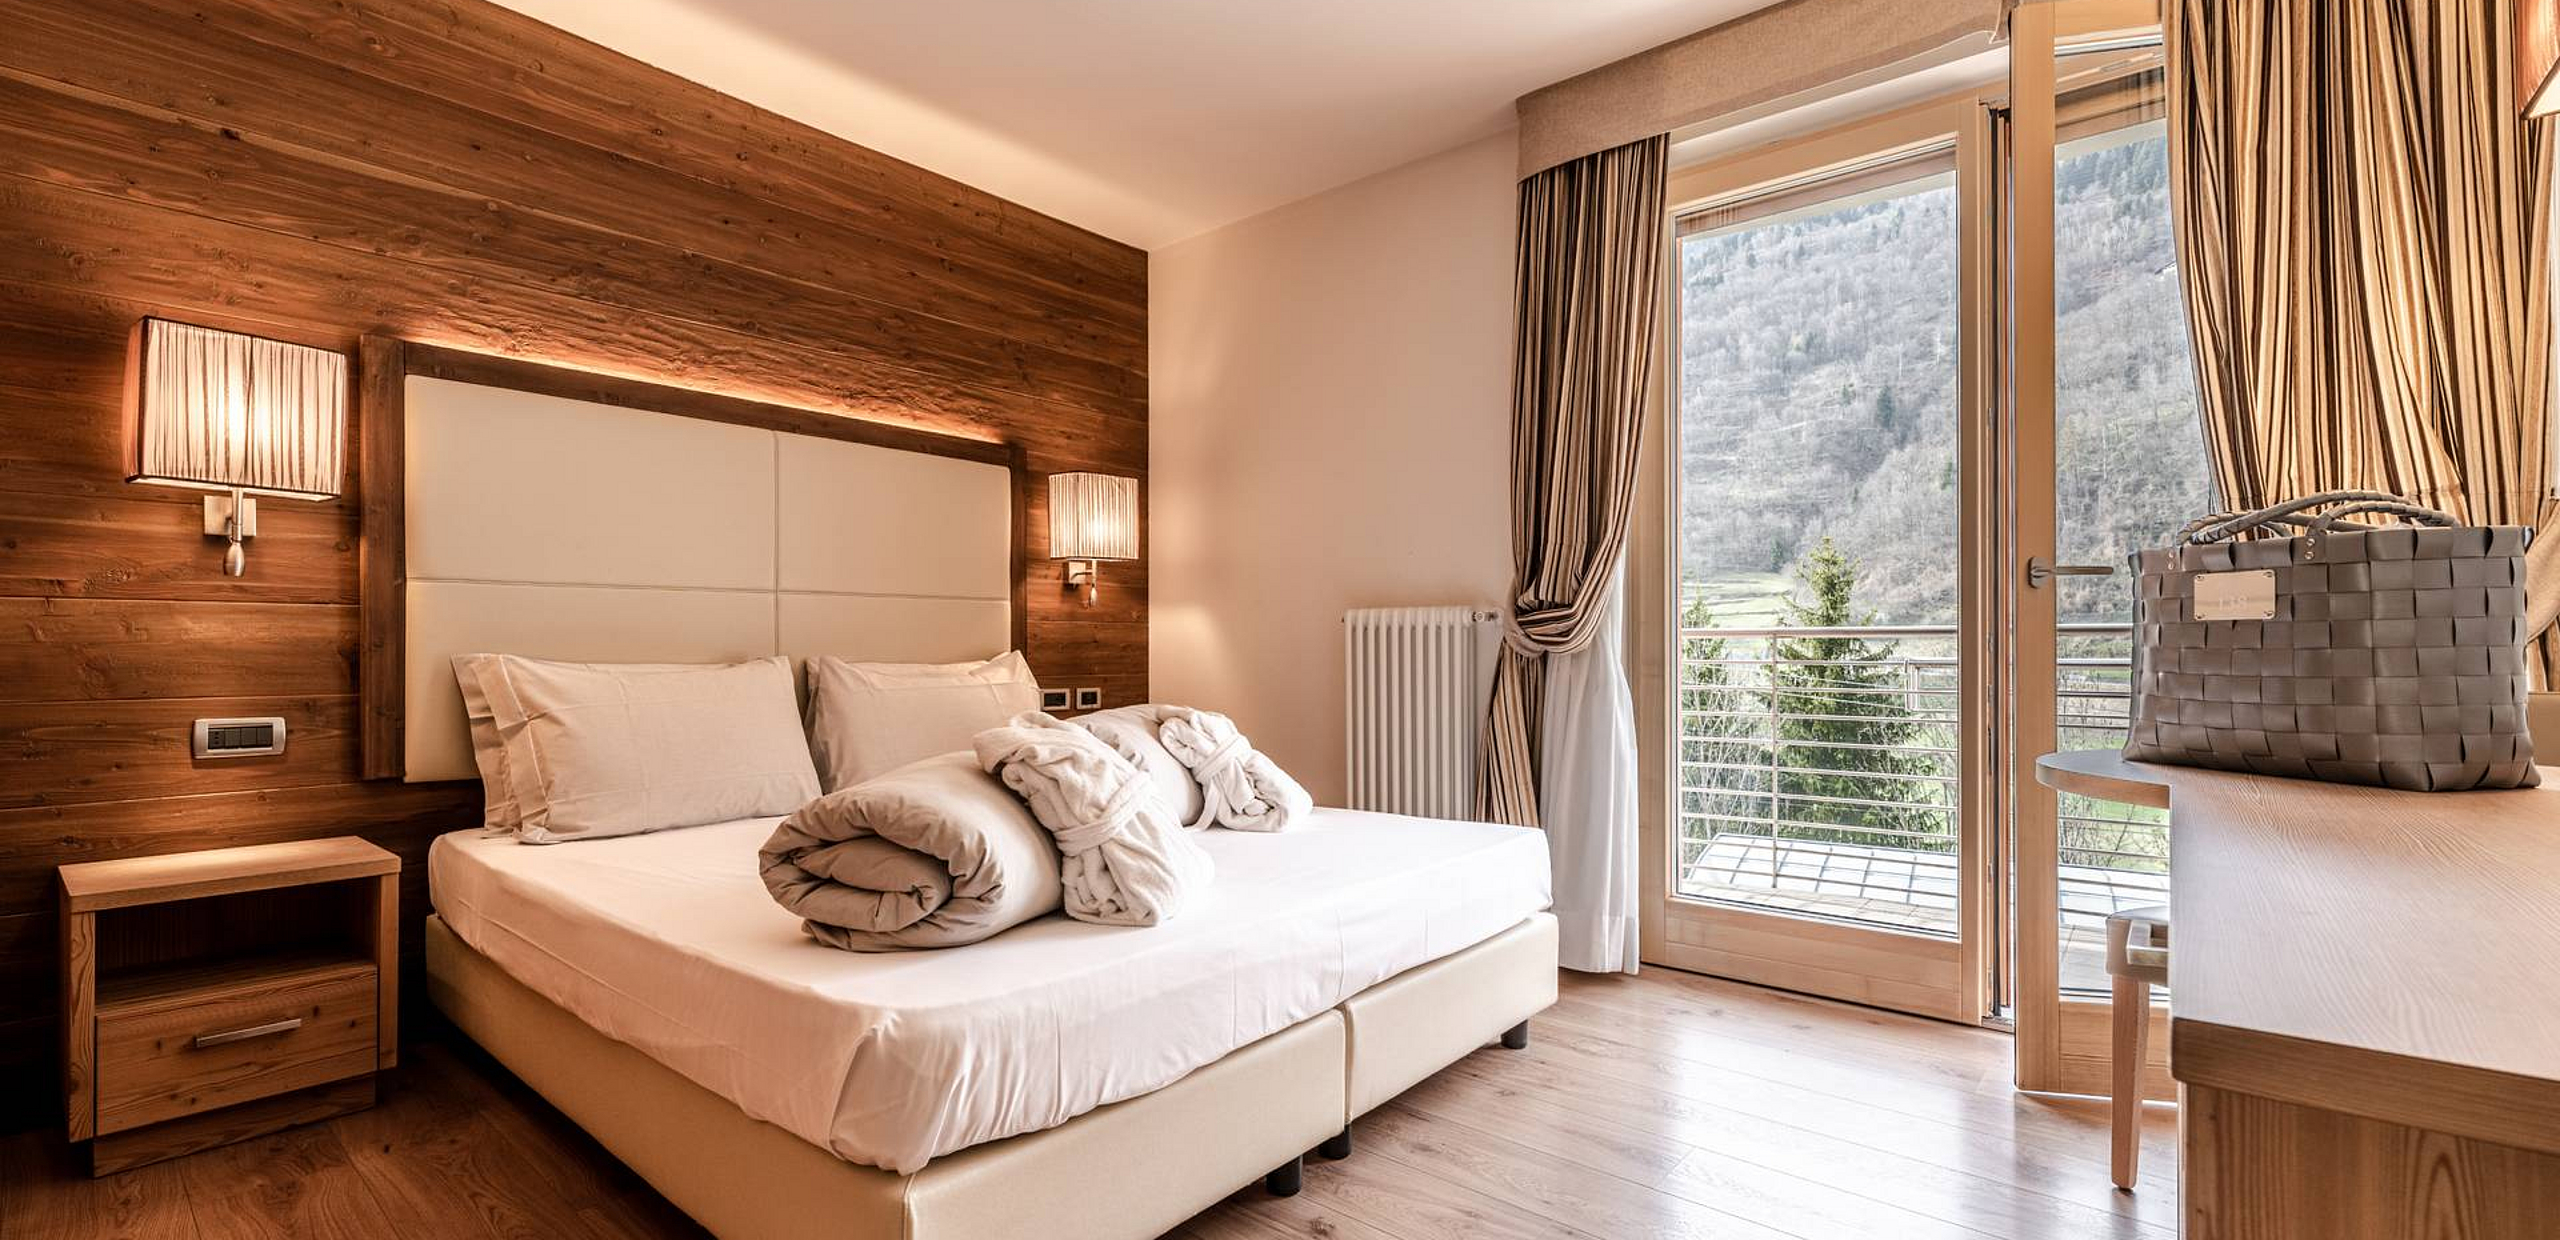 Double room with balcony, Mezzana, South Tyrol